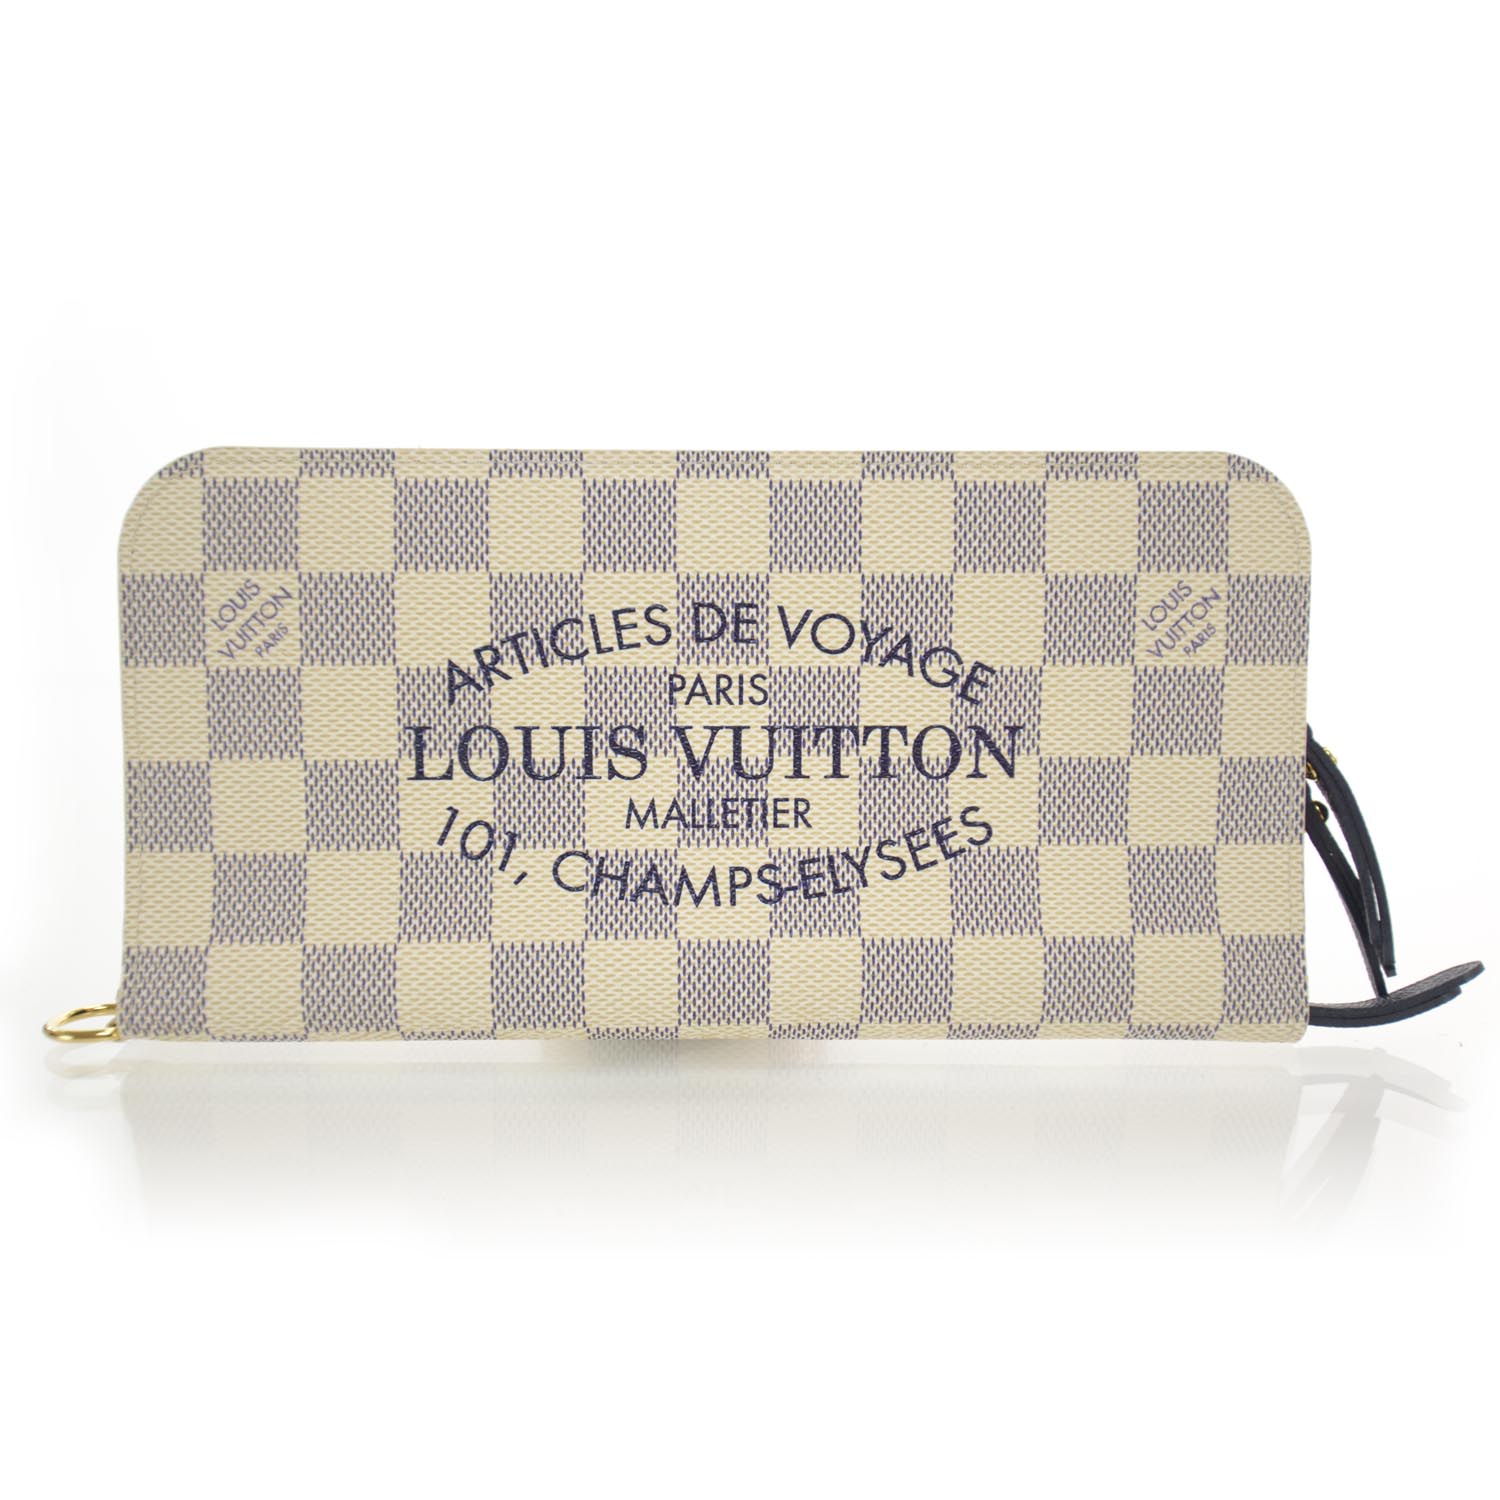 LOUIS VUITTON Damier Azur Articles de Voyage Insolite Wallet 35604